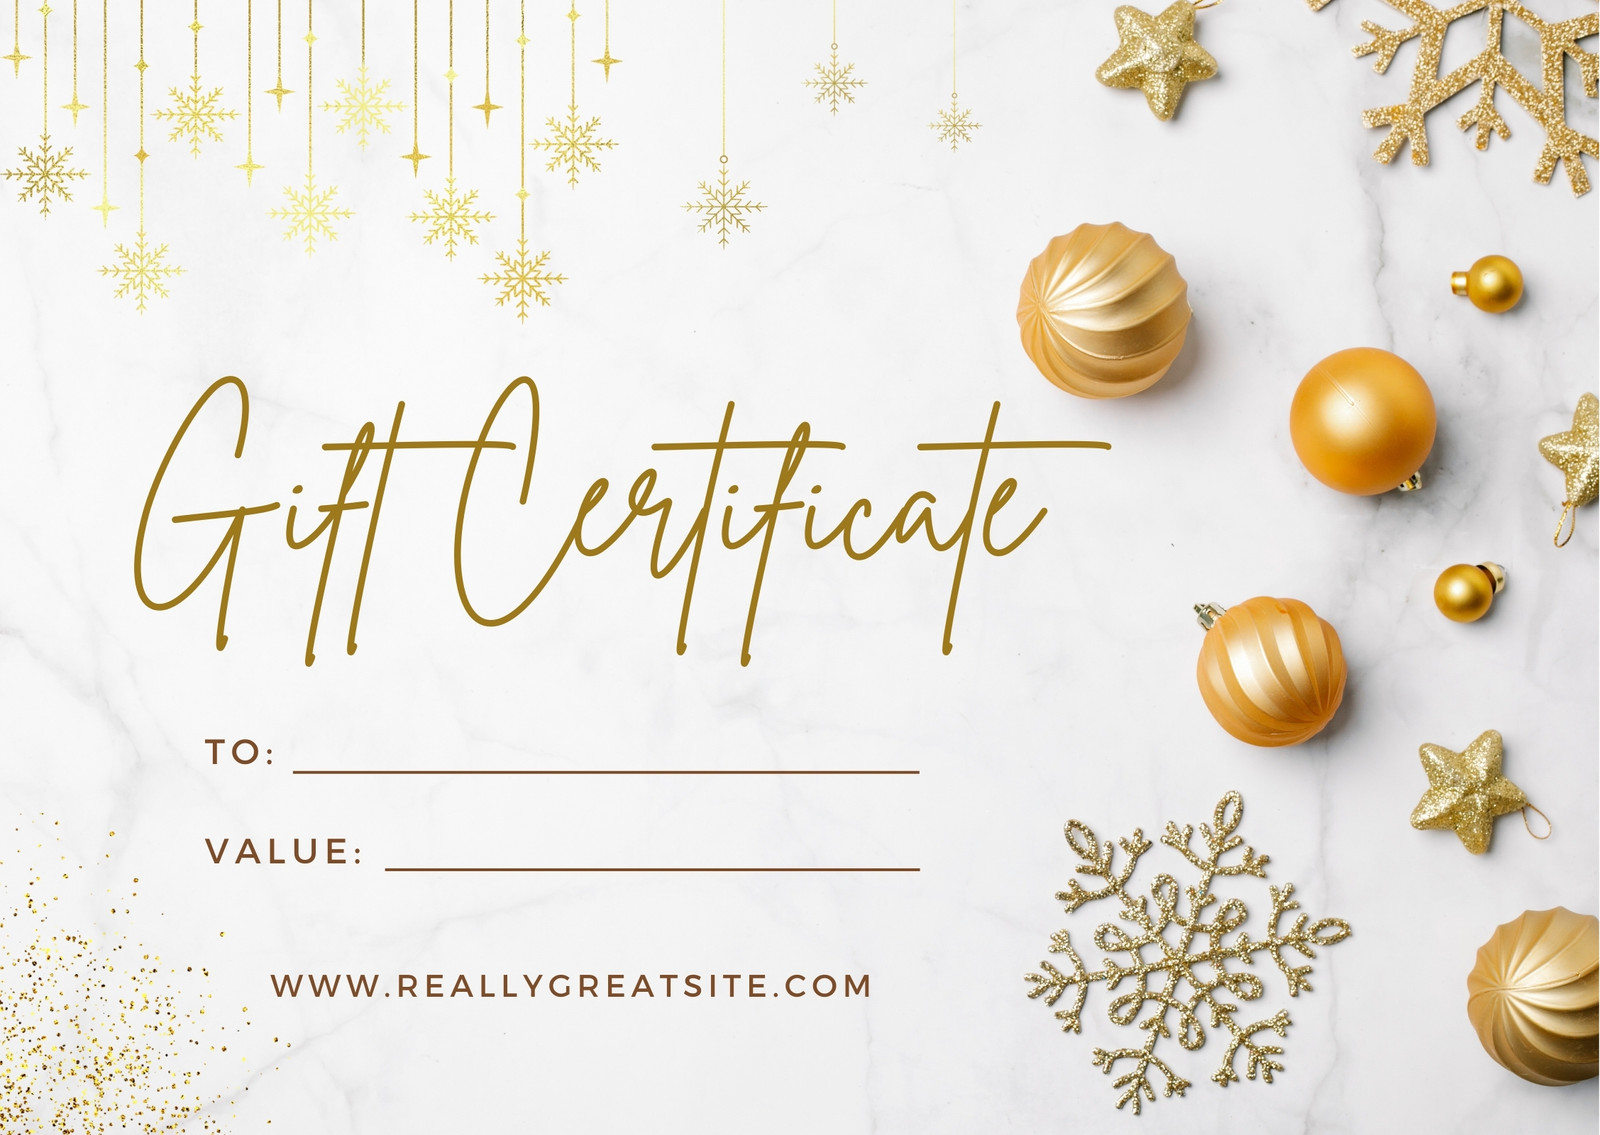 Santa Gift Certificate Template